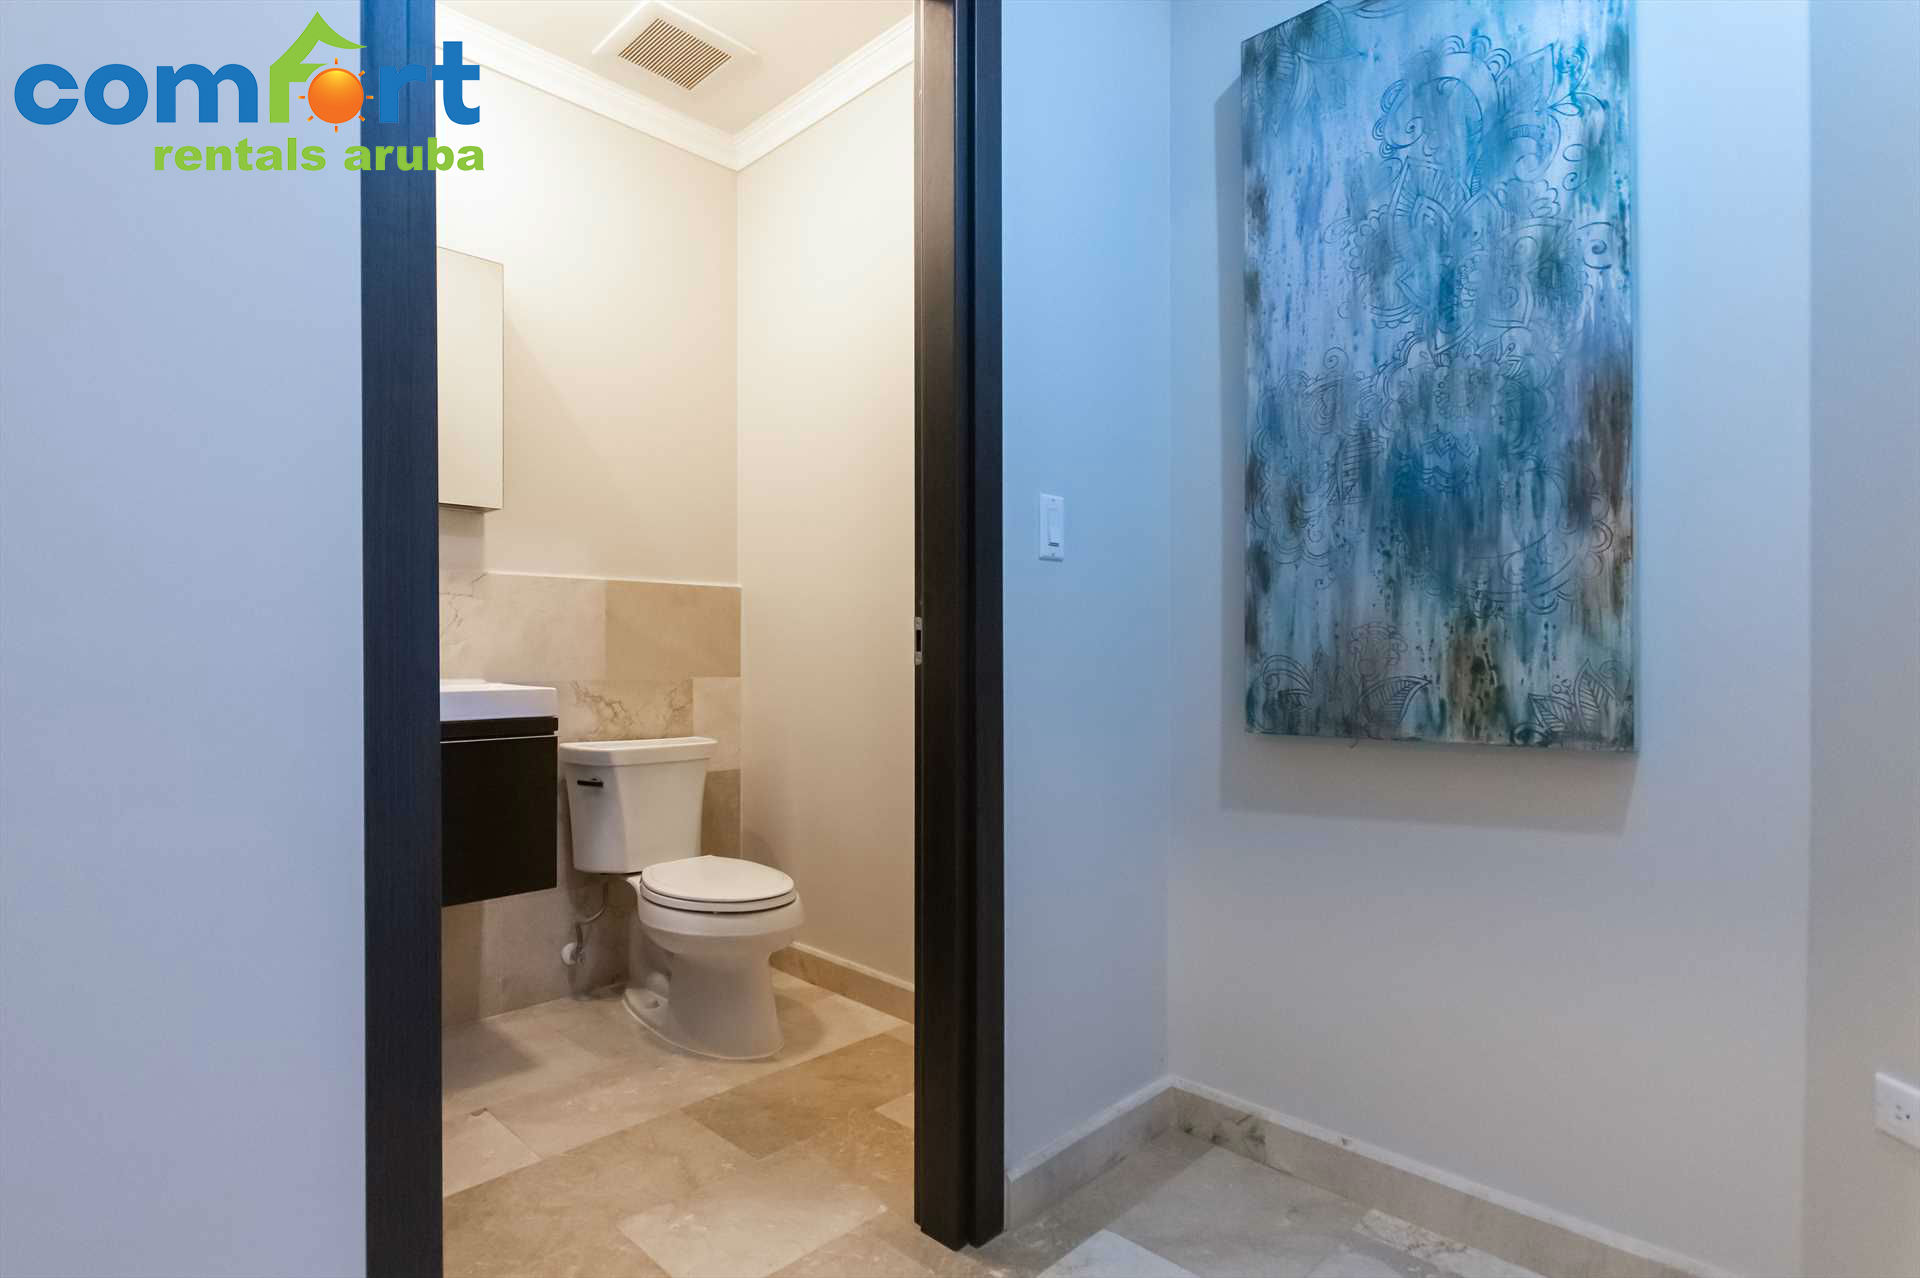 A half bathroom is conveniently located in the corridor